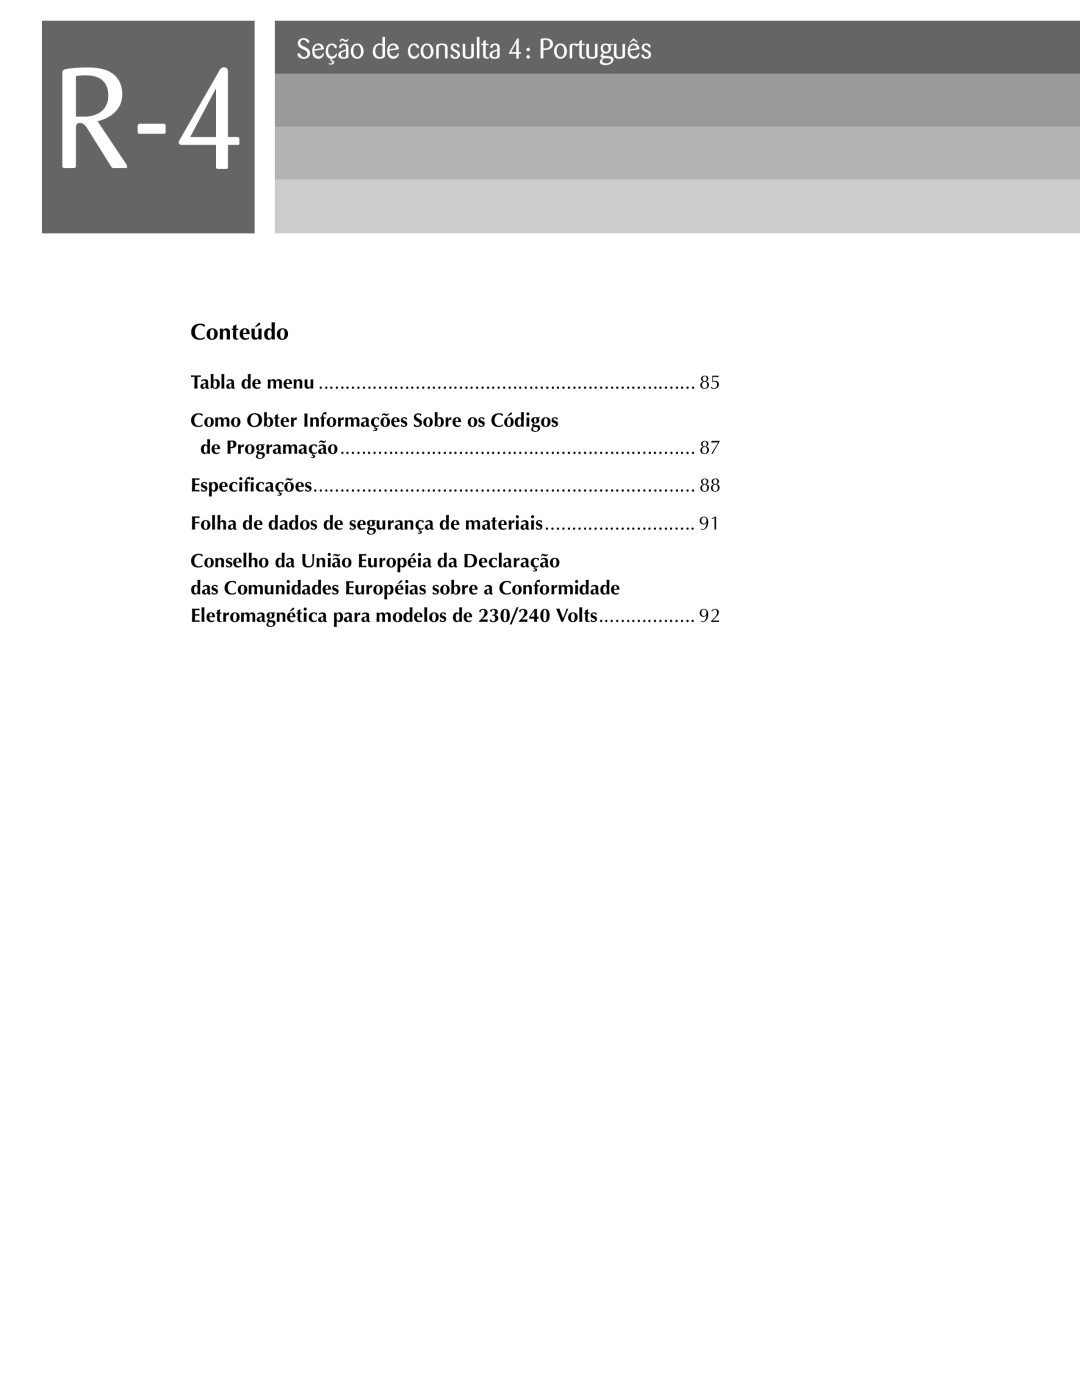 Oki ML590 manual Seção de consulta 4 Português, Conteúdo, Como Obter Informações Sobre os Códigos 